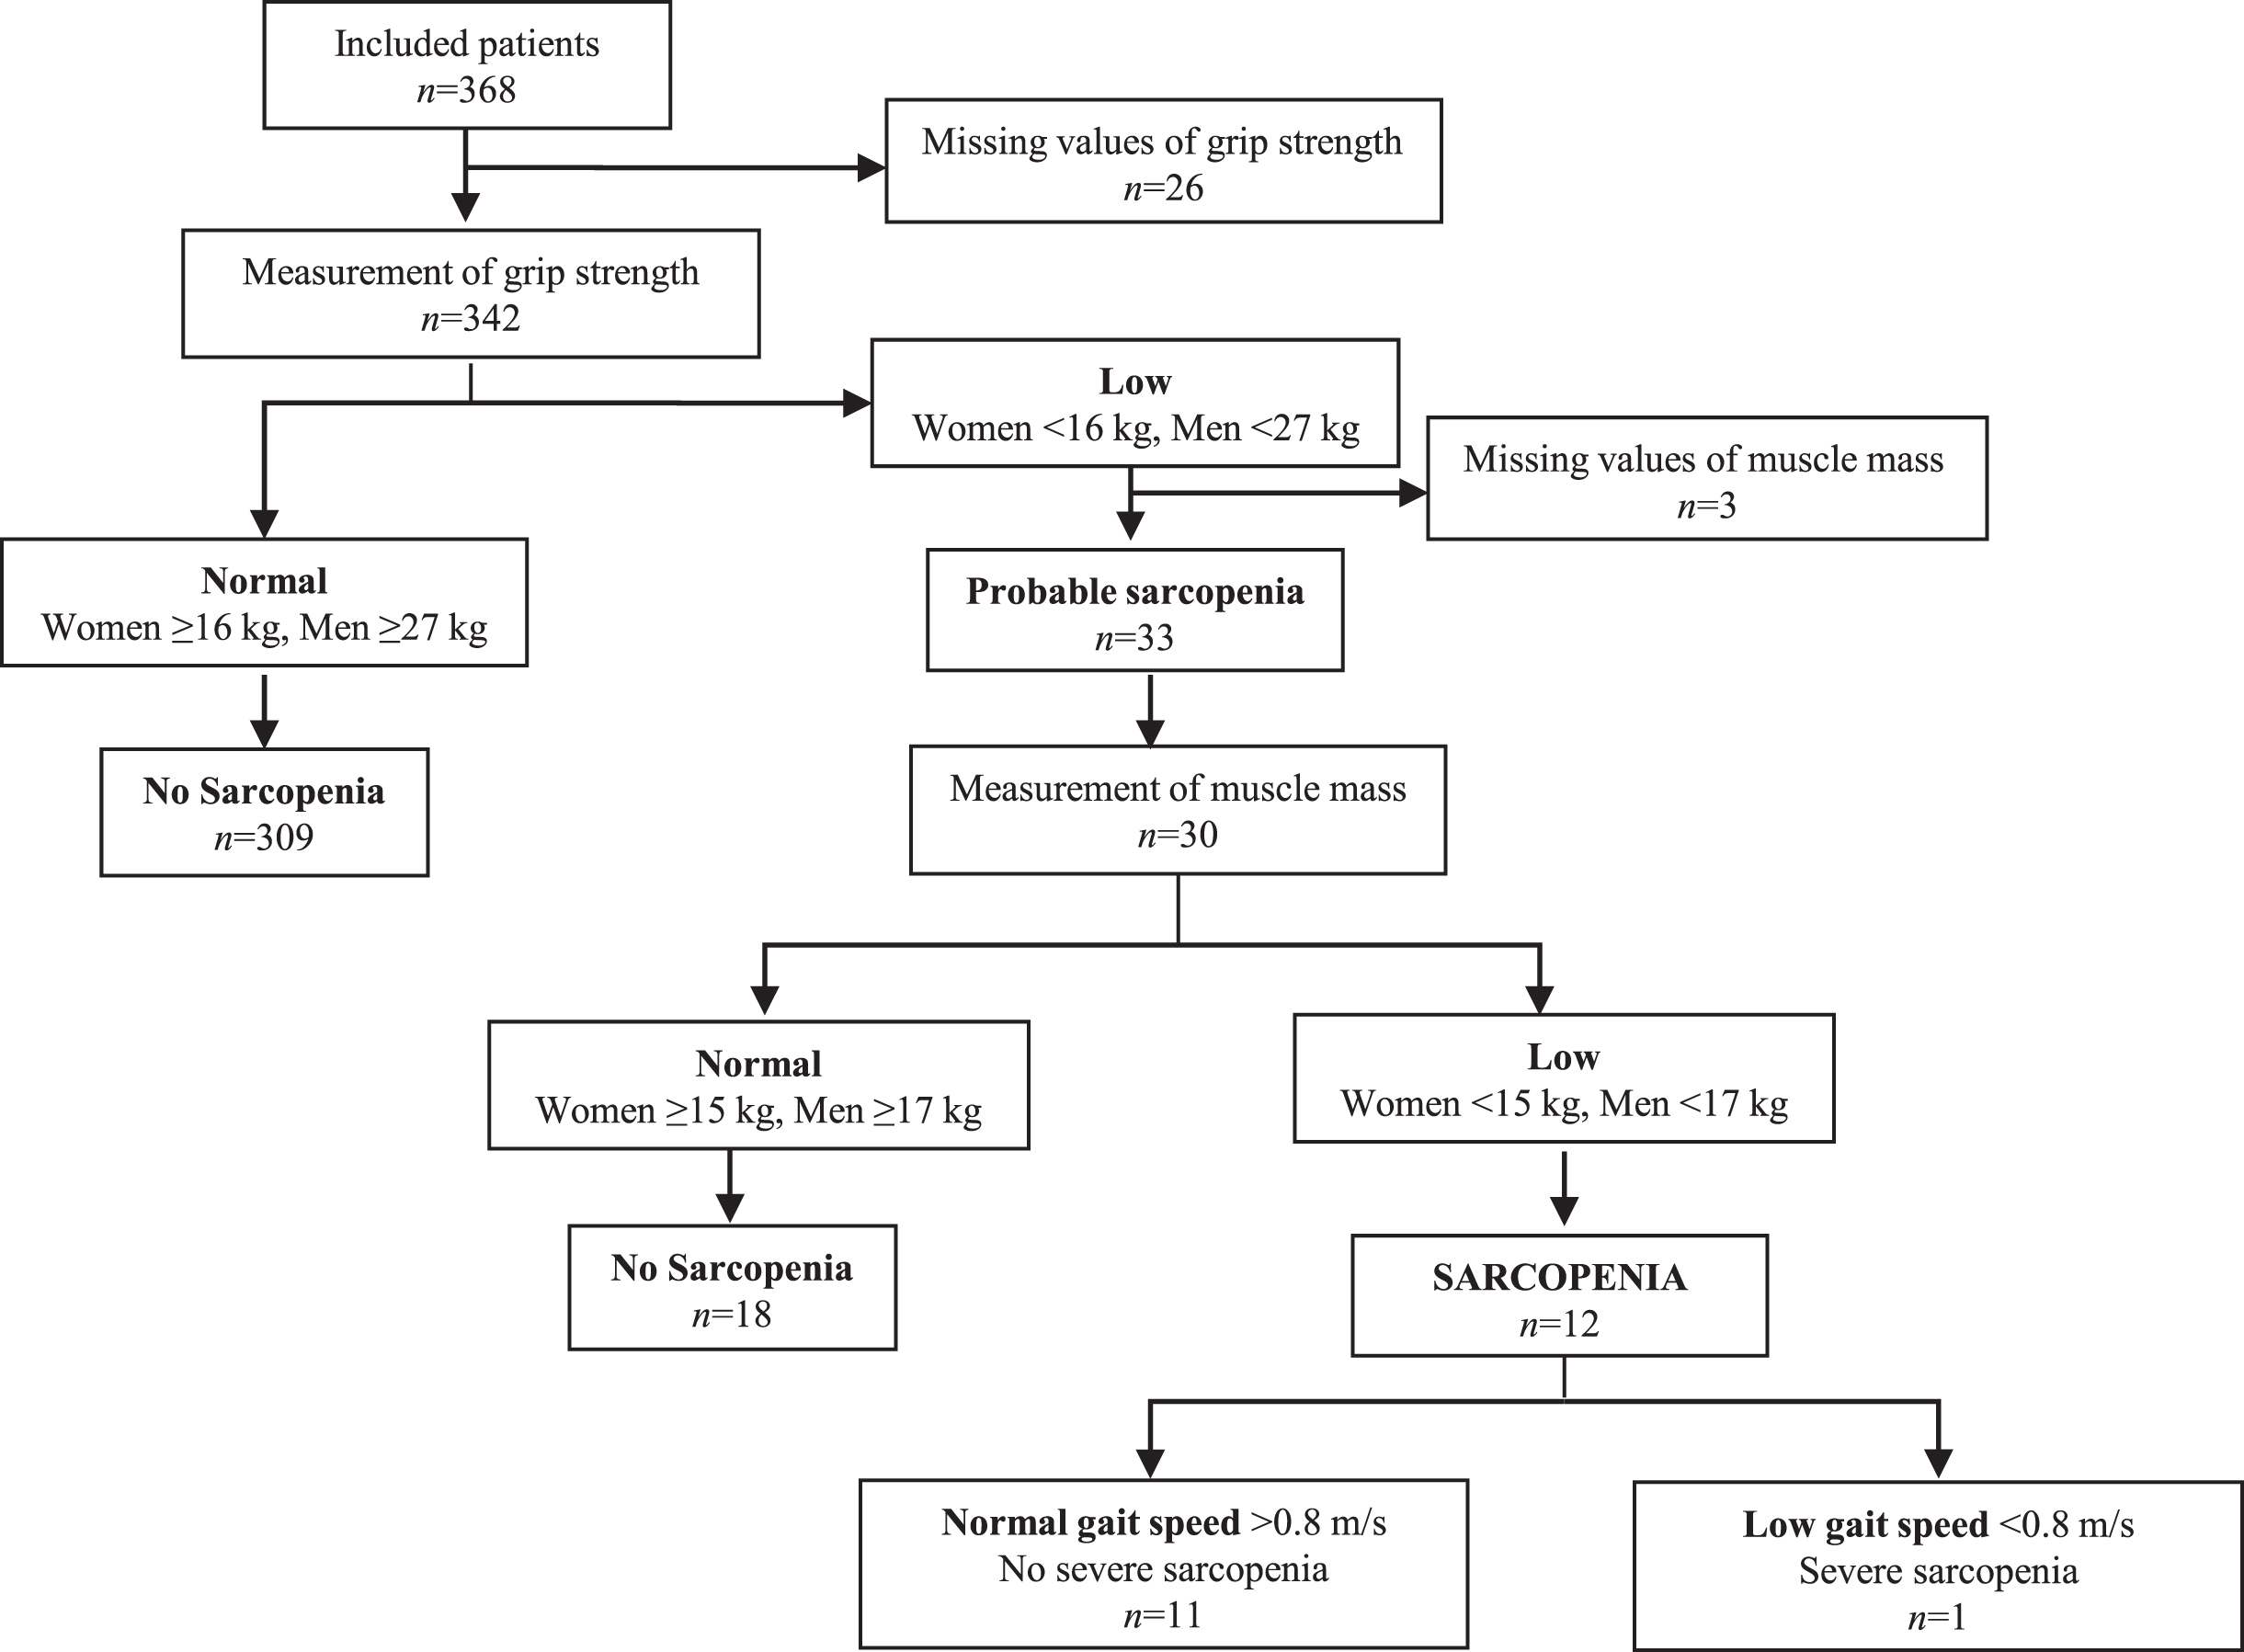 Algorithm for diagnostic assessment of sarcopenia according to EWGSOP2.